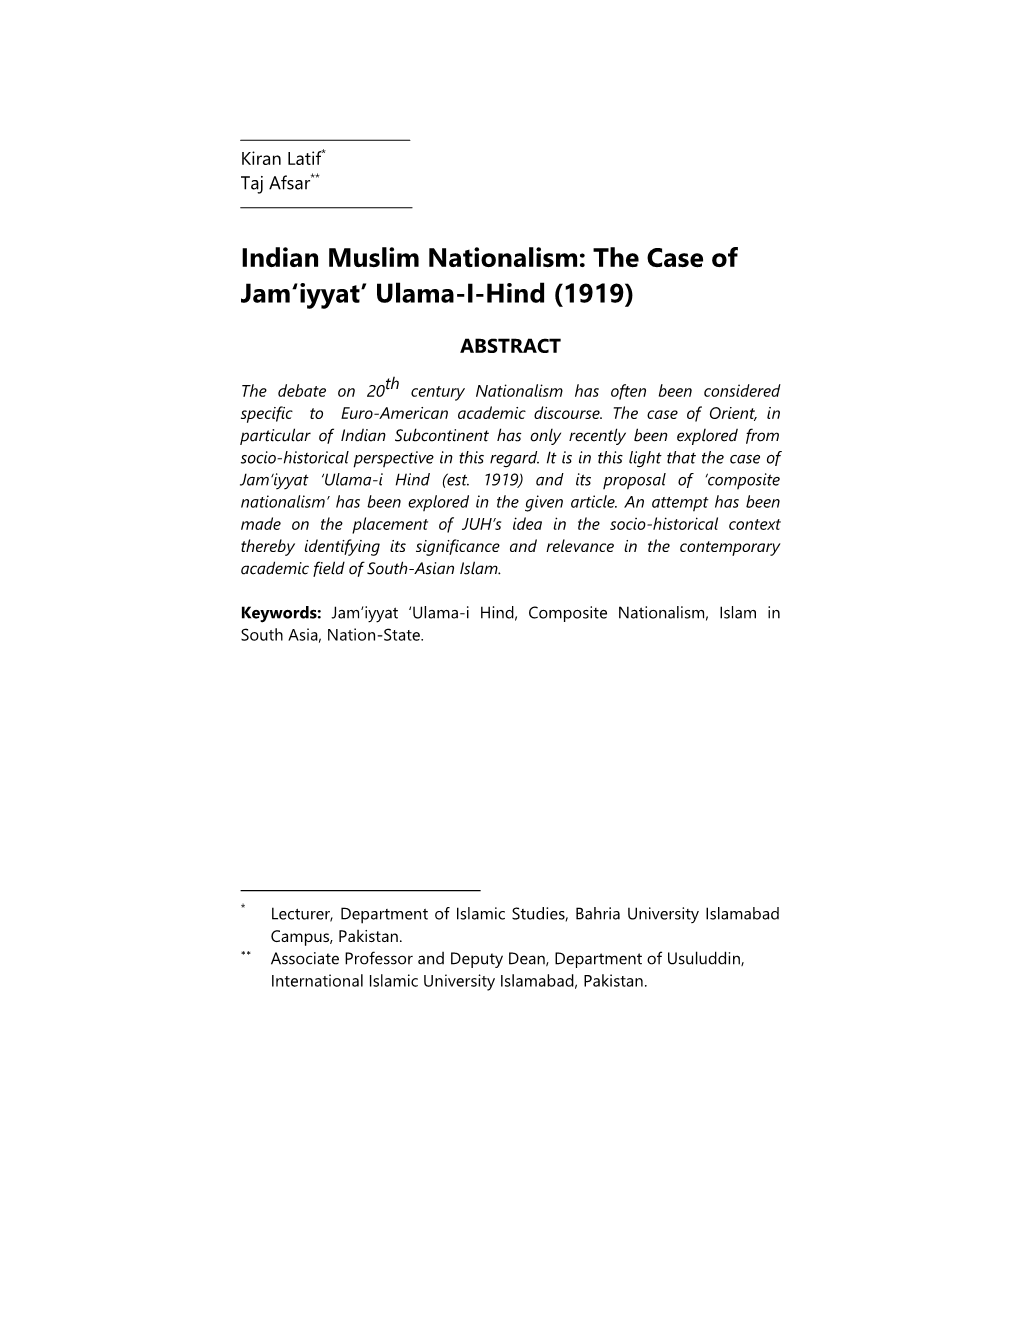 Indian Muslim Nationalism: the Case of Jam‘Iyyat’ Ulama-I-Hind (1919)